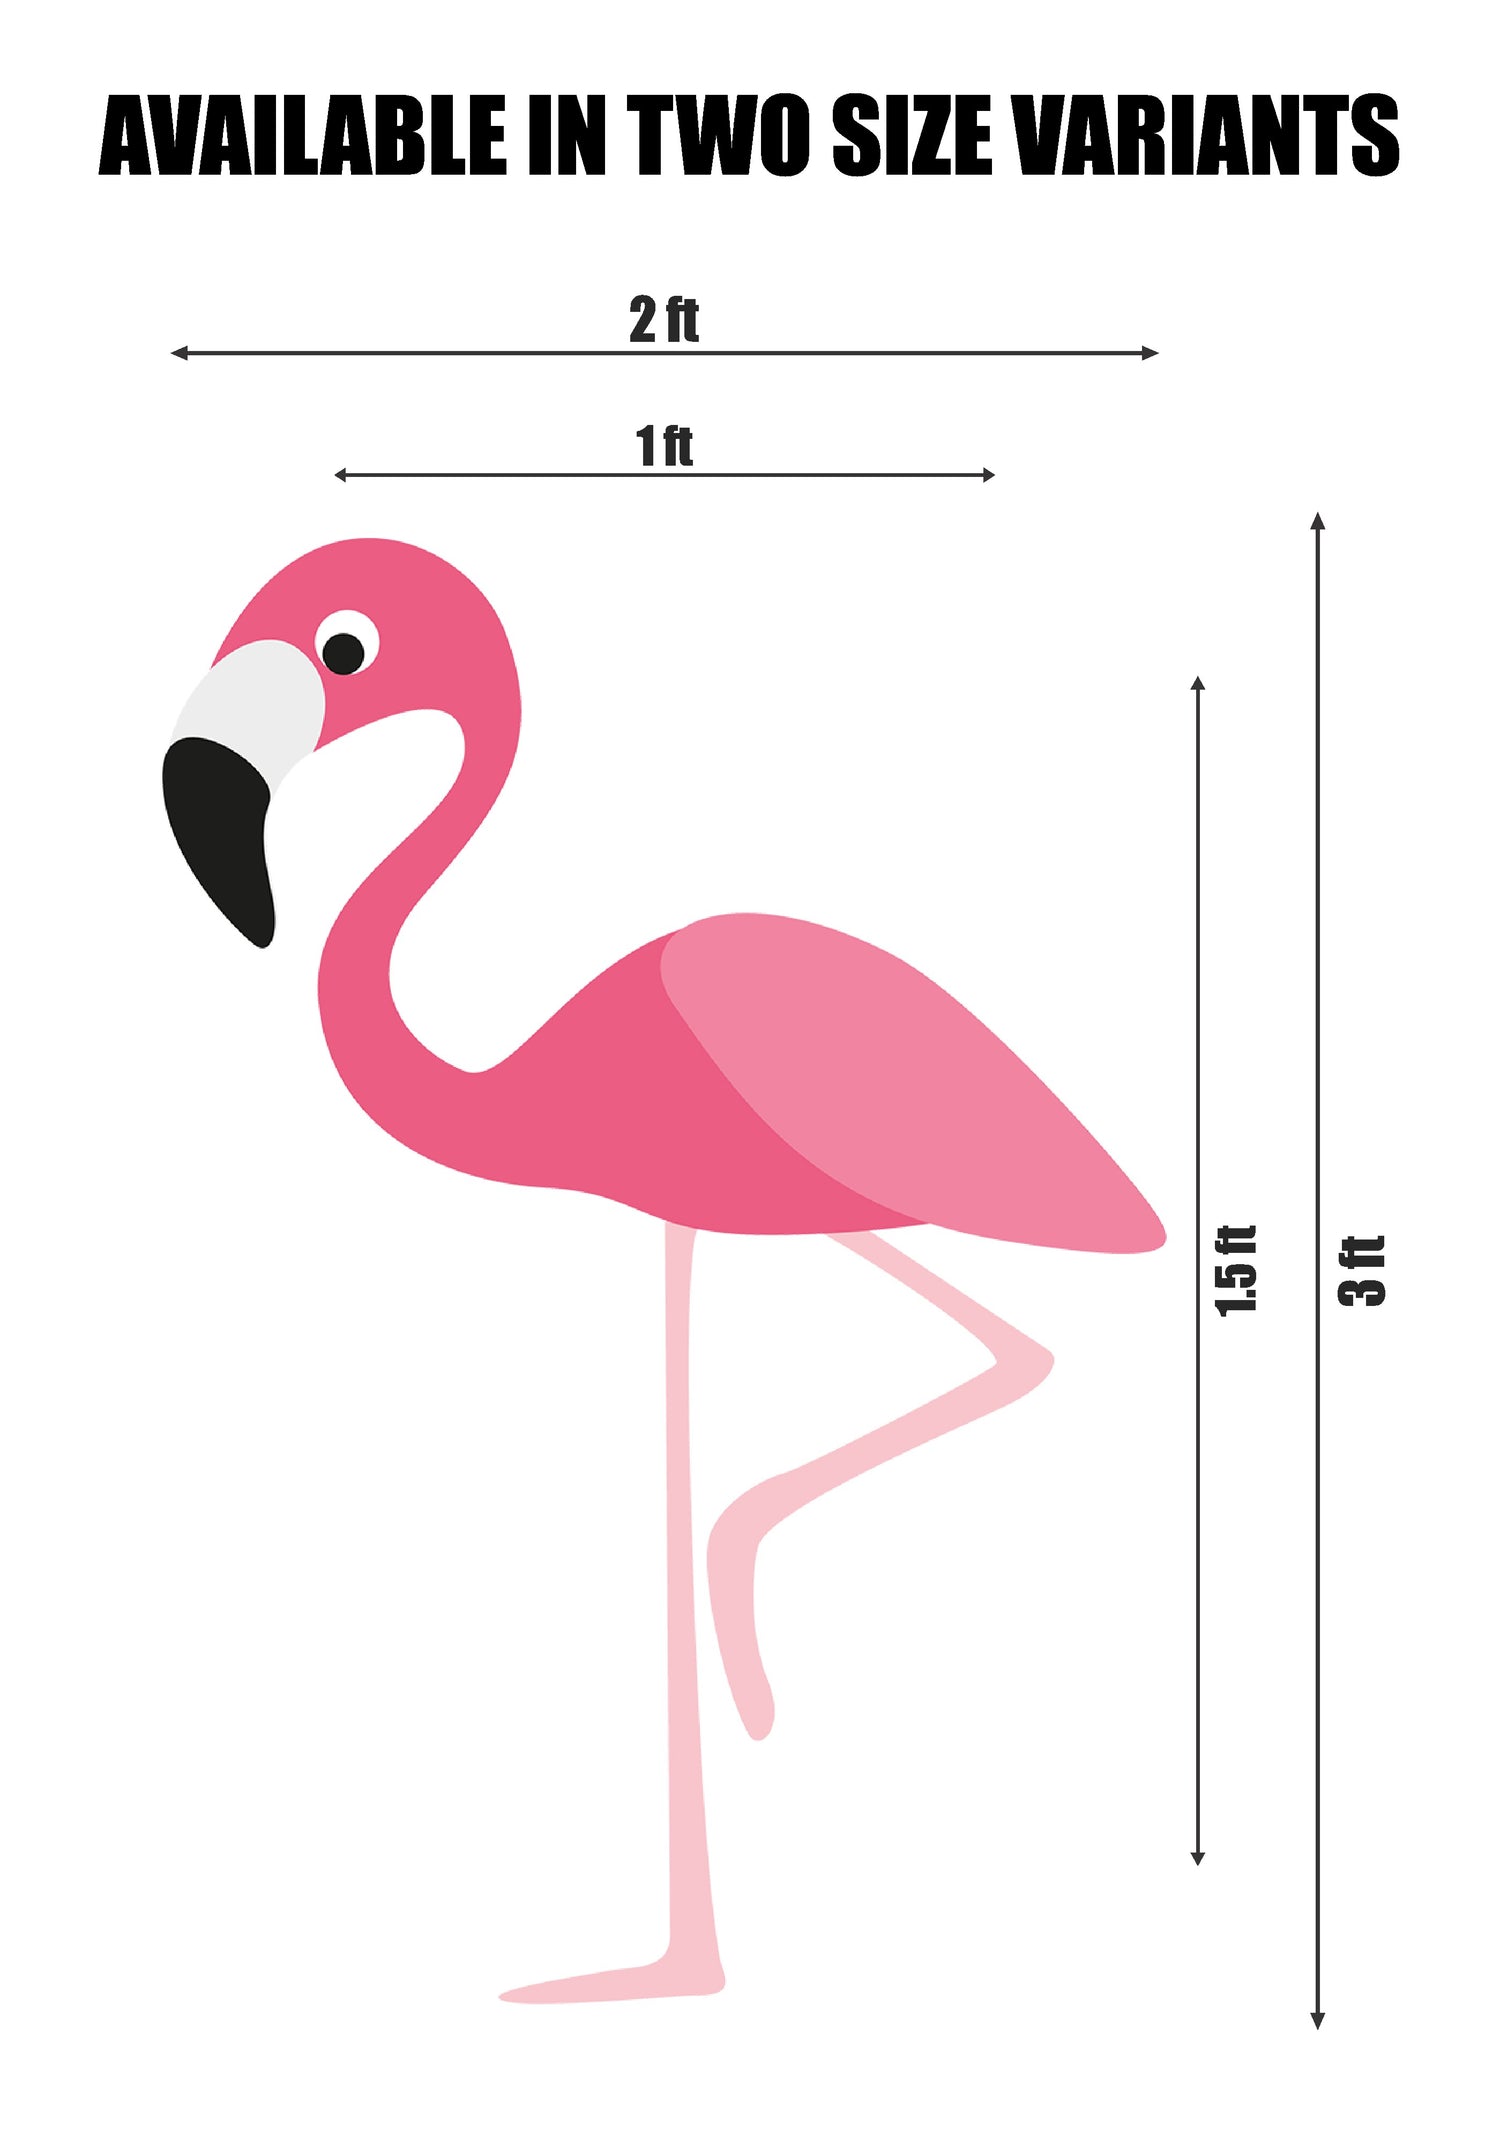 PSI Flamingo Theme Cutout - 09